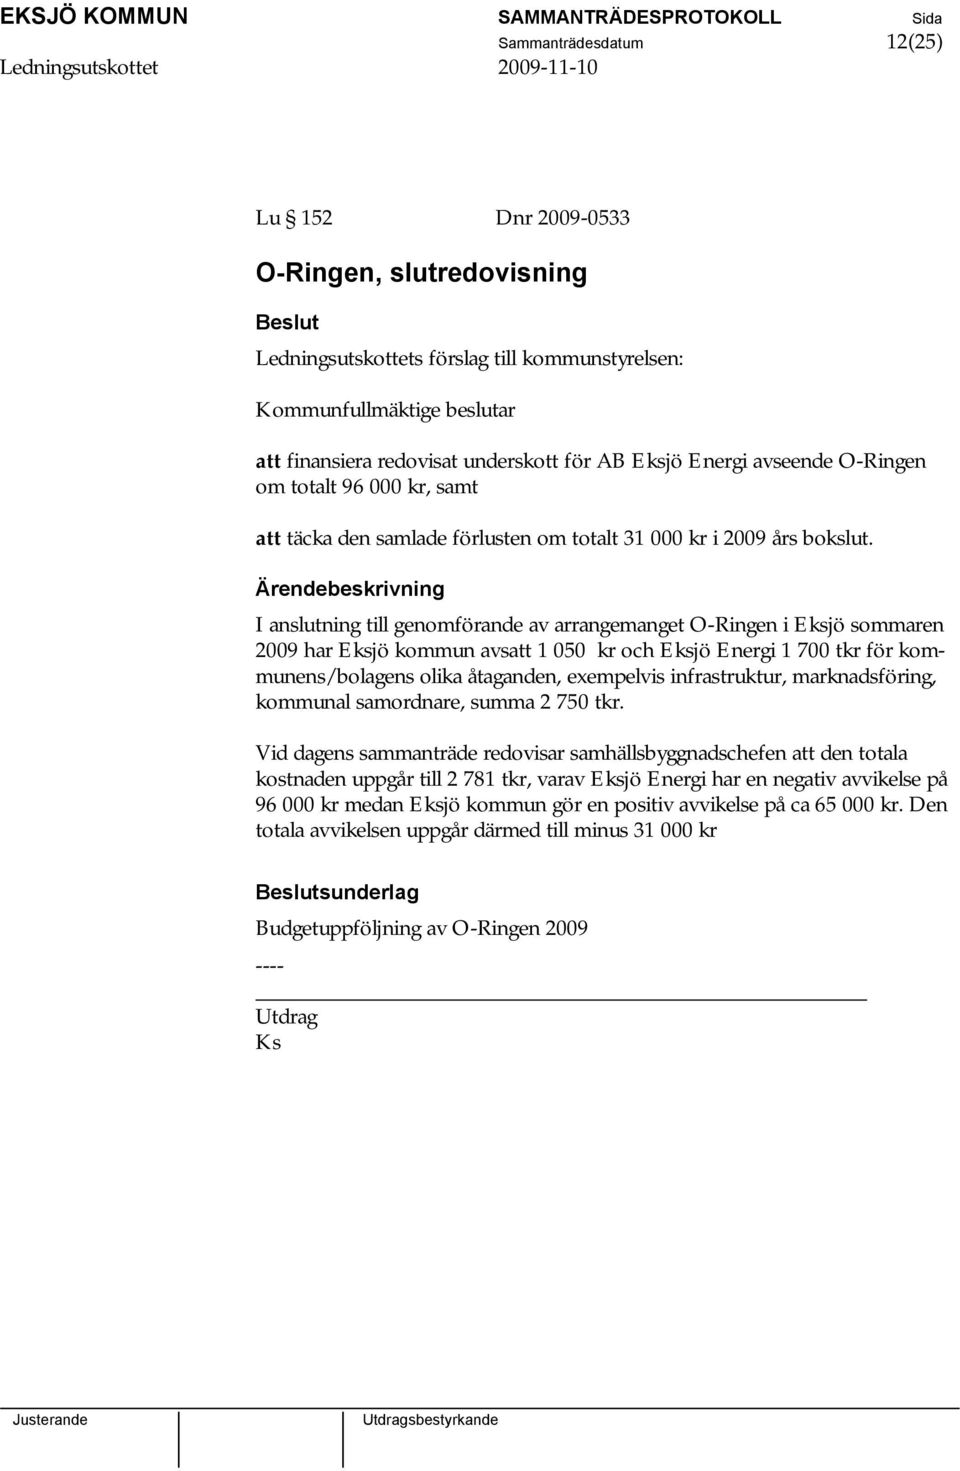 I anslutning till genomförande av arrangemanget O-Ringen i Eksjö sommaren 2009 har Eksjö kommun avsatt 1 050 kr och Eksjö Energi 1 700 tkr för kommunens/bolagens olika åtaganden, exempelvis